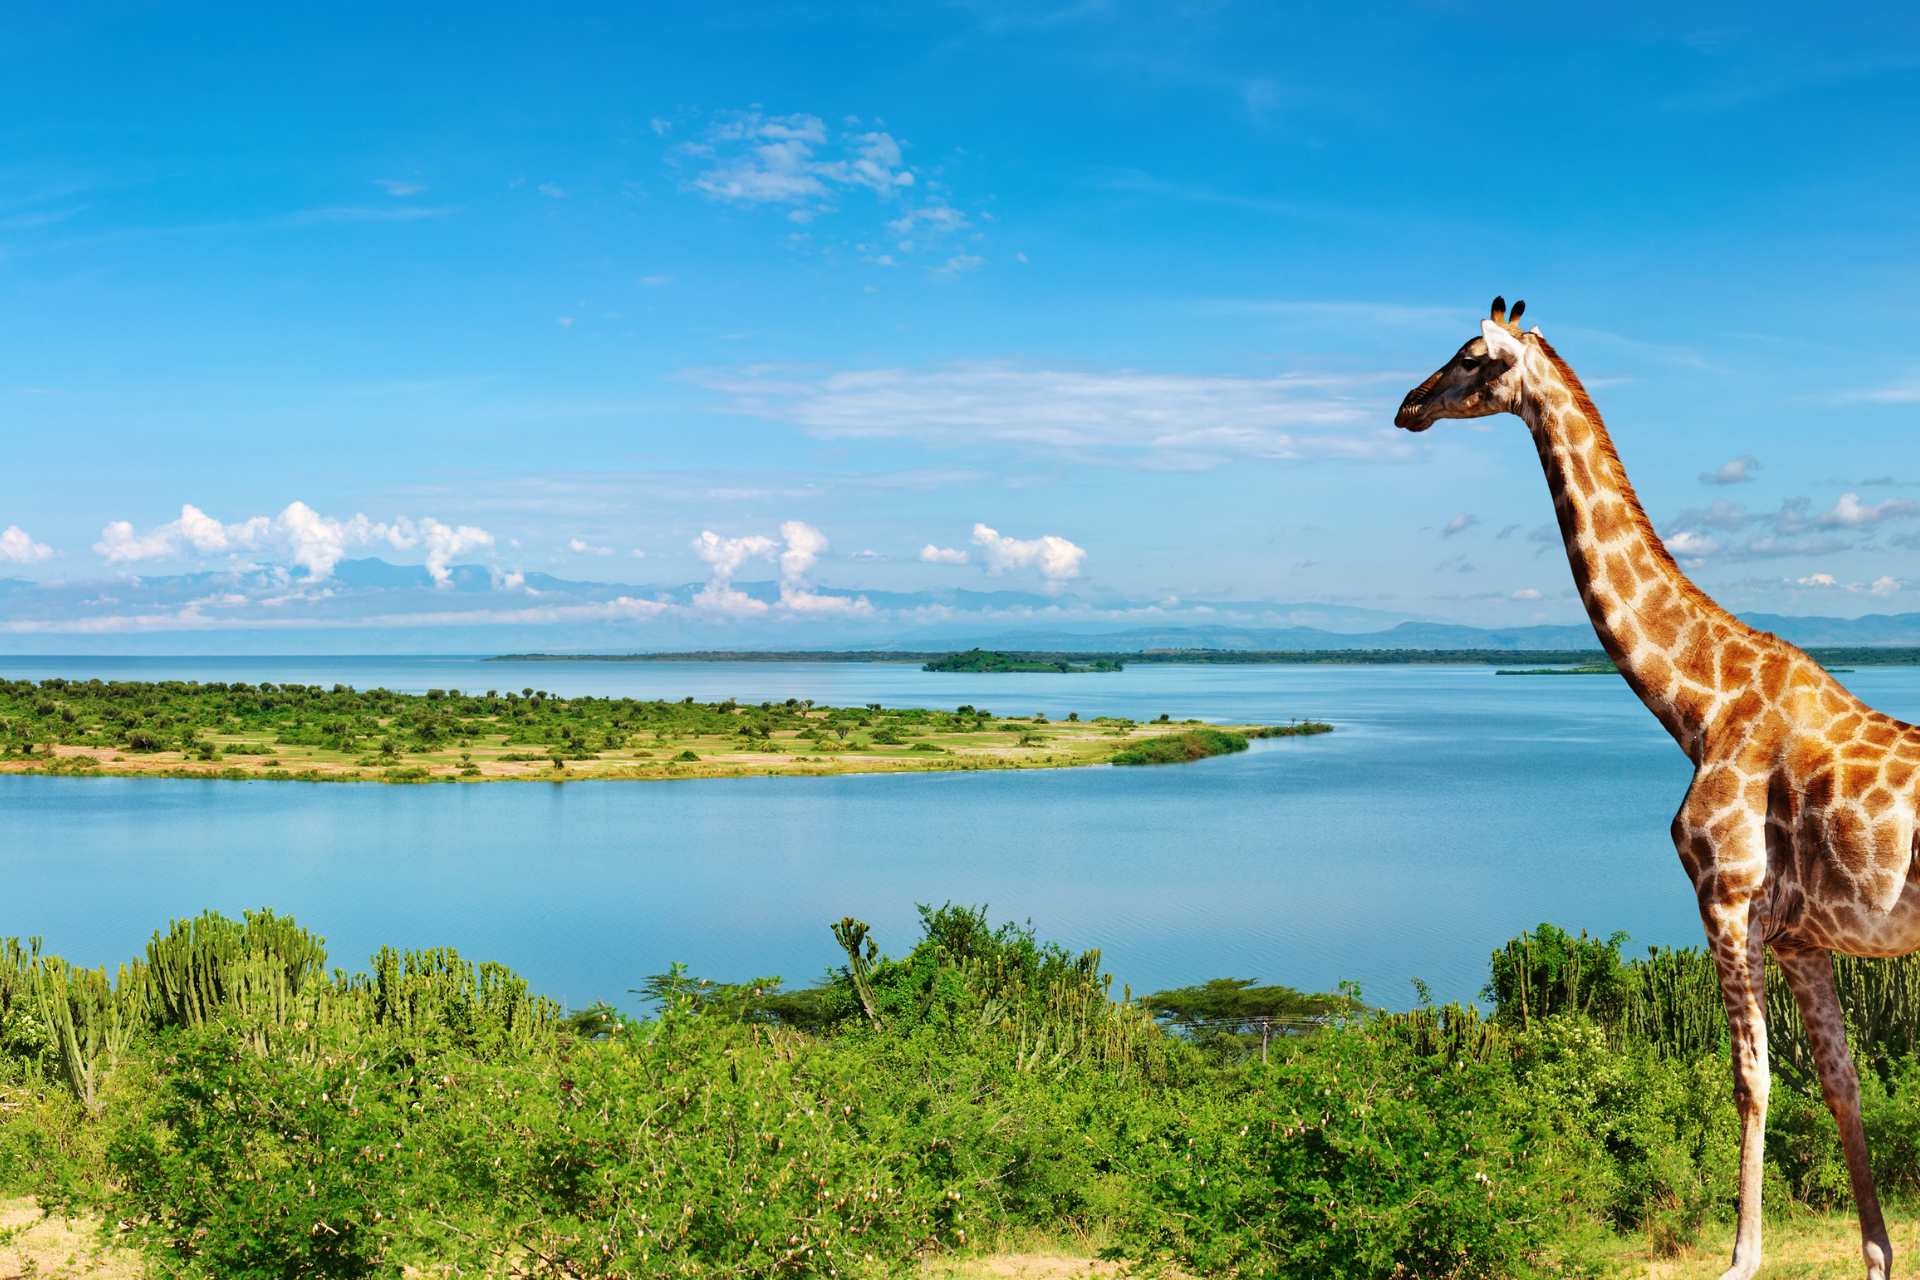 Nile in Uganda, Africa